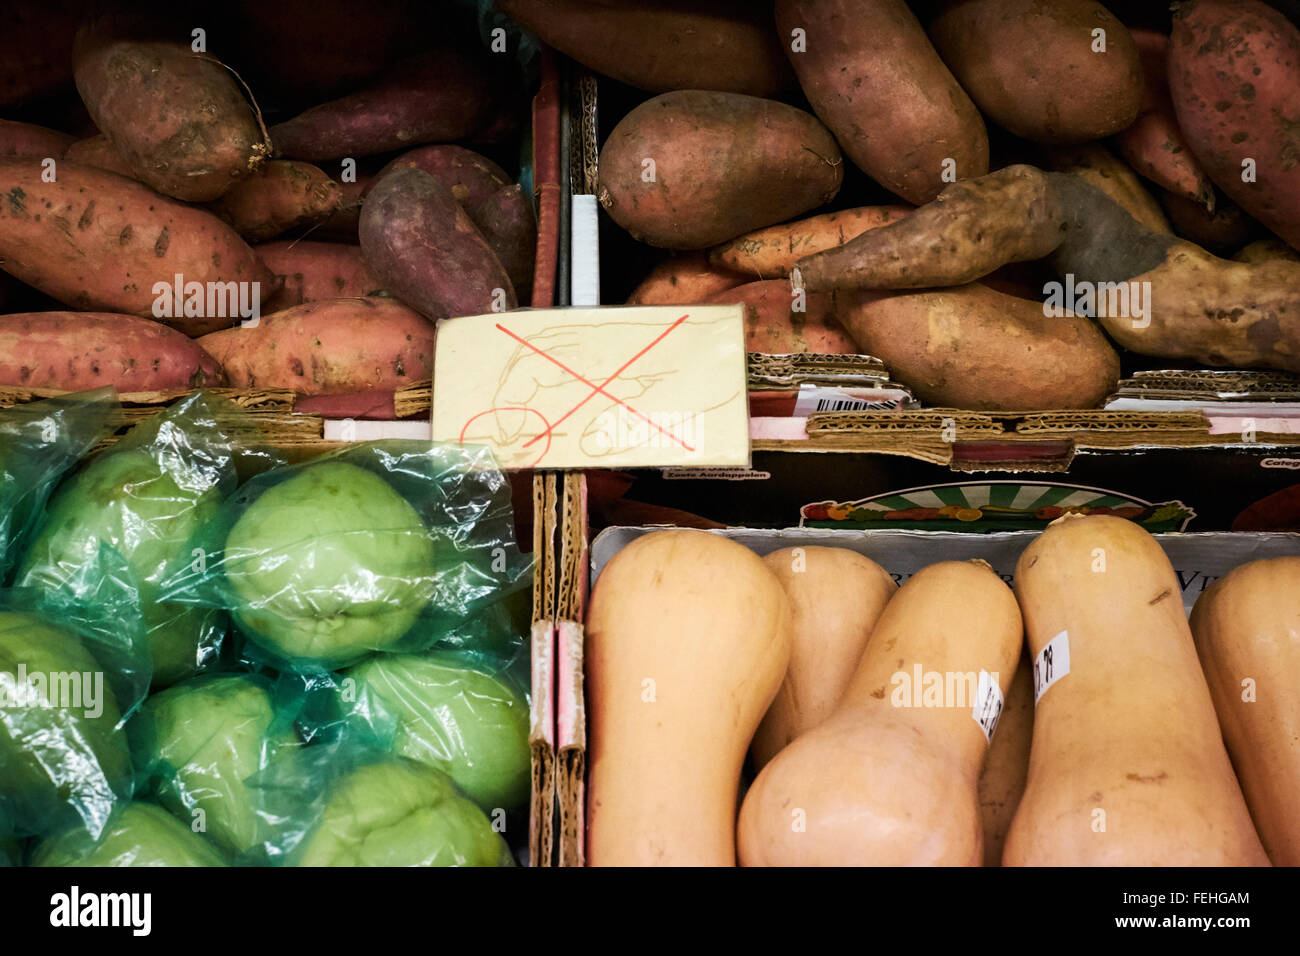 Nicht berühren. Gemüse wie Süßkartoffeln und Squash Box auf einem Regal in einem Geschäft. Stockfoto